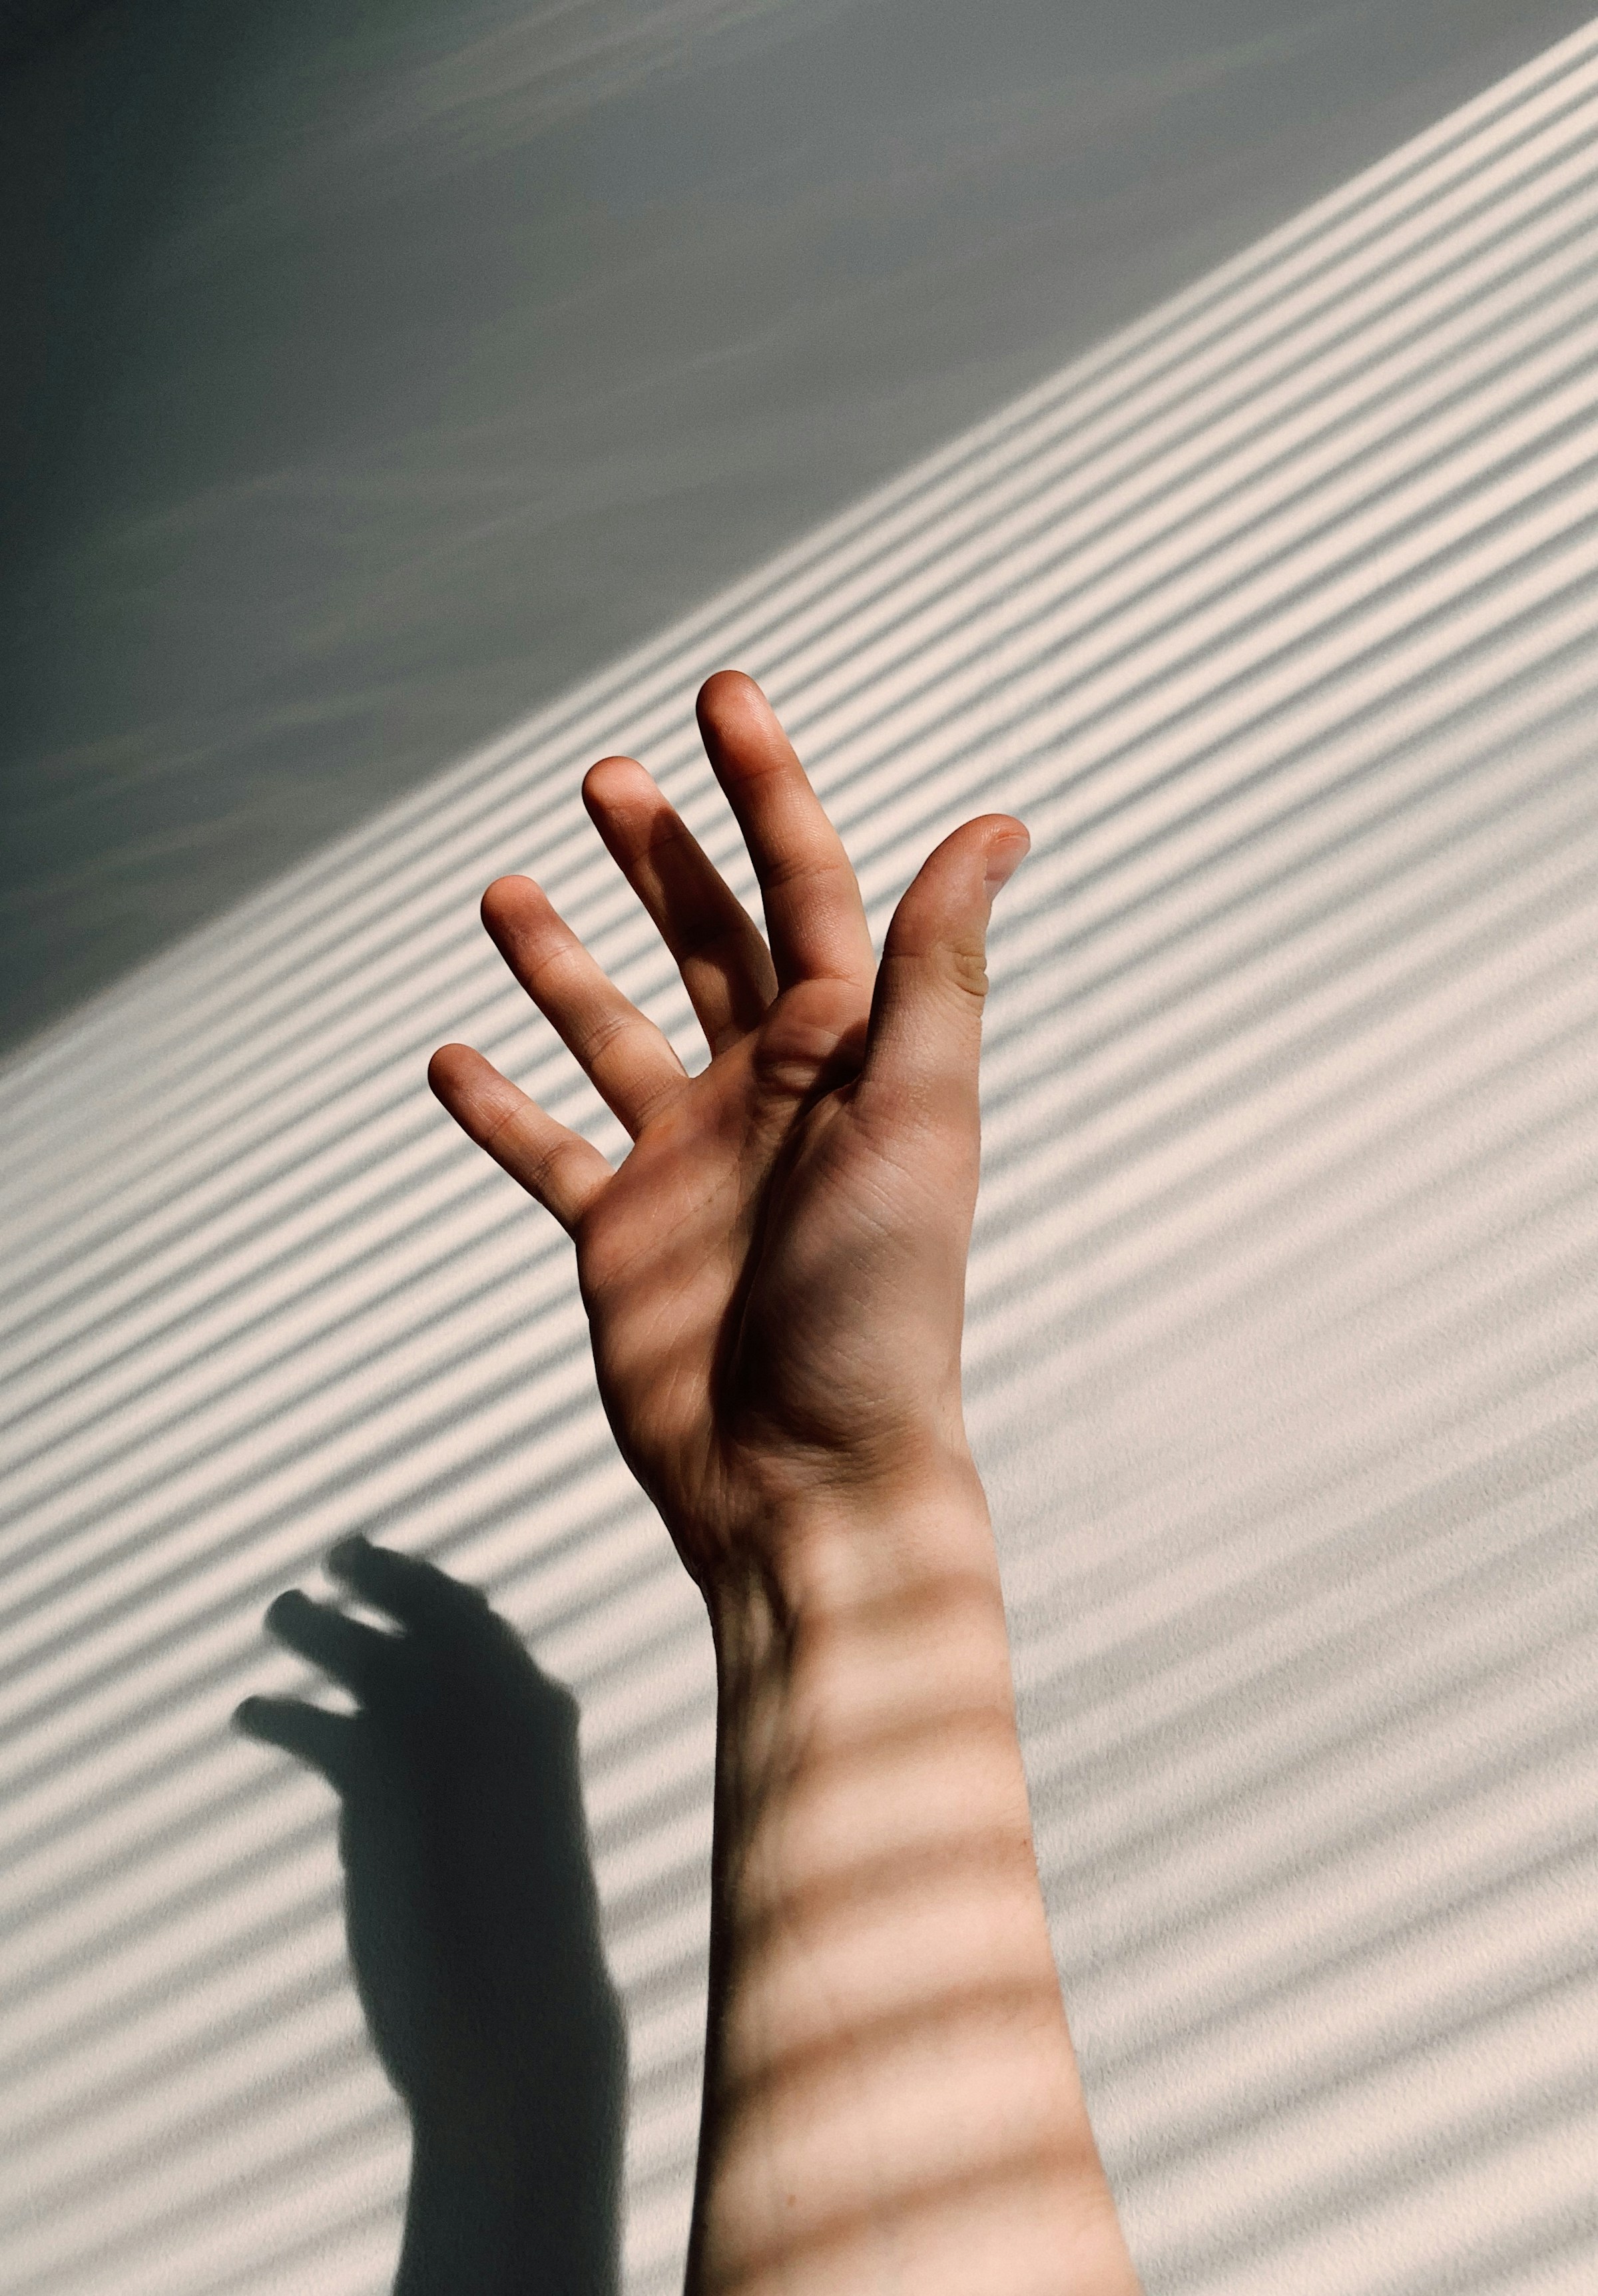 La mano tendida de un hombre | Fuente: Unsplash